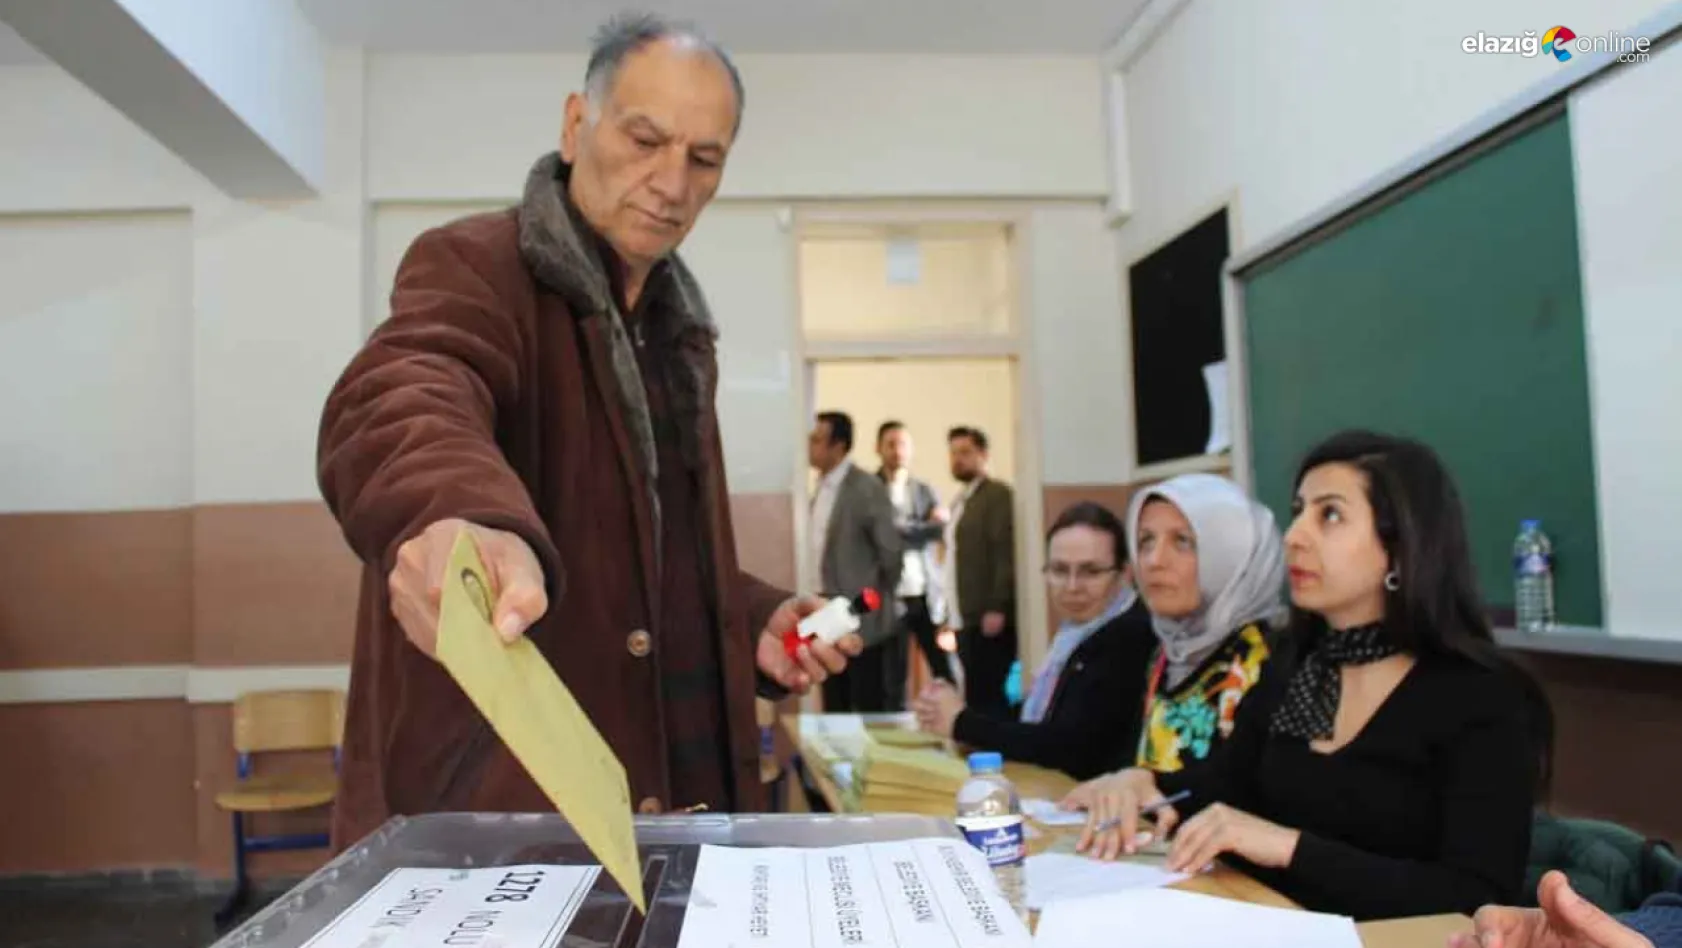 İşte 14 Mayıs seçimlerinde Elazığ'da görev alacak personel sayısı!